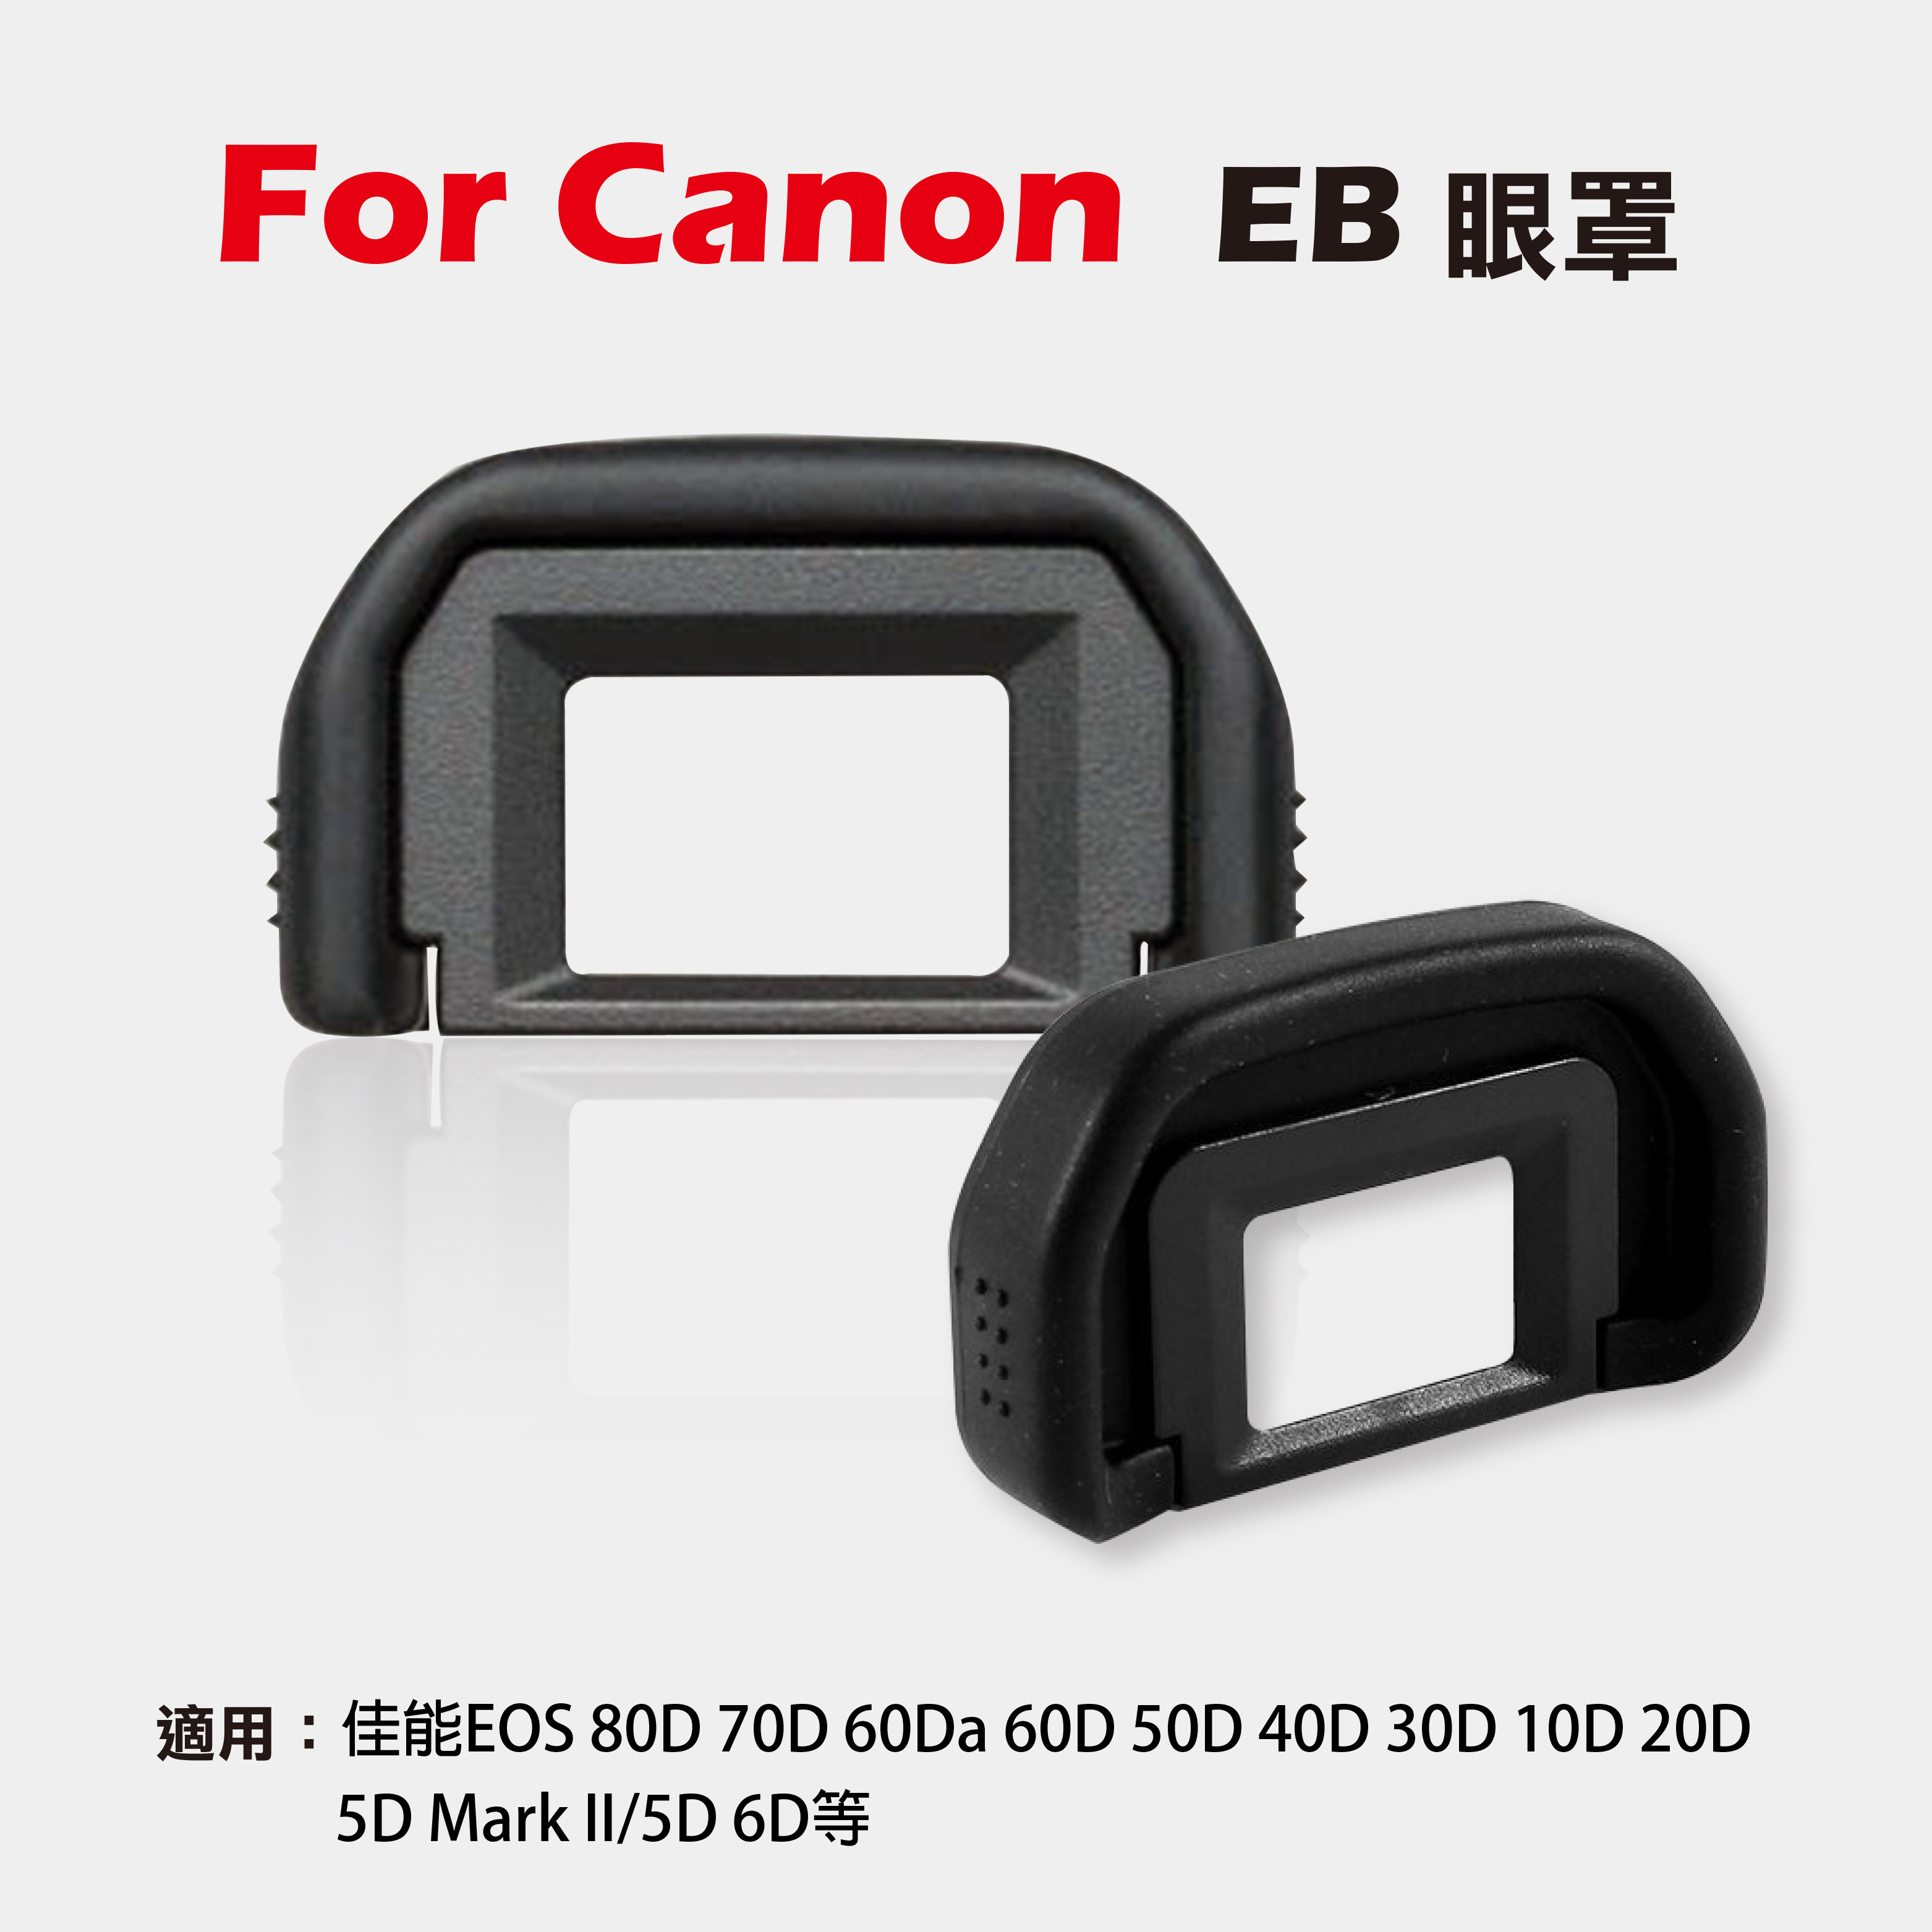 攝彩@Canon EB眼罩 取景器眼罩 80D 70D 60Da 60D 50D 40D 5DII 5D 6D用 副廠